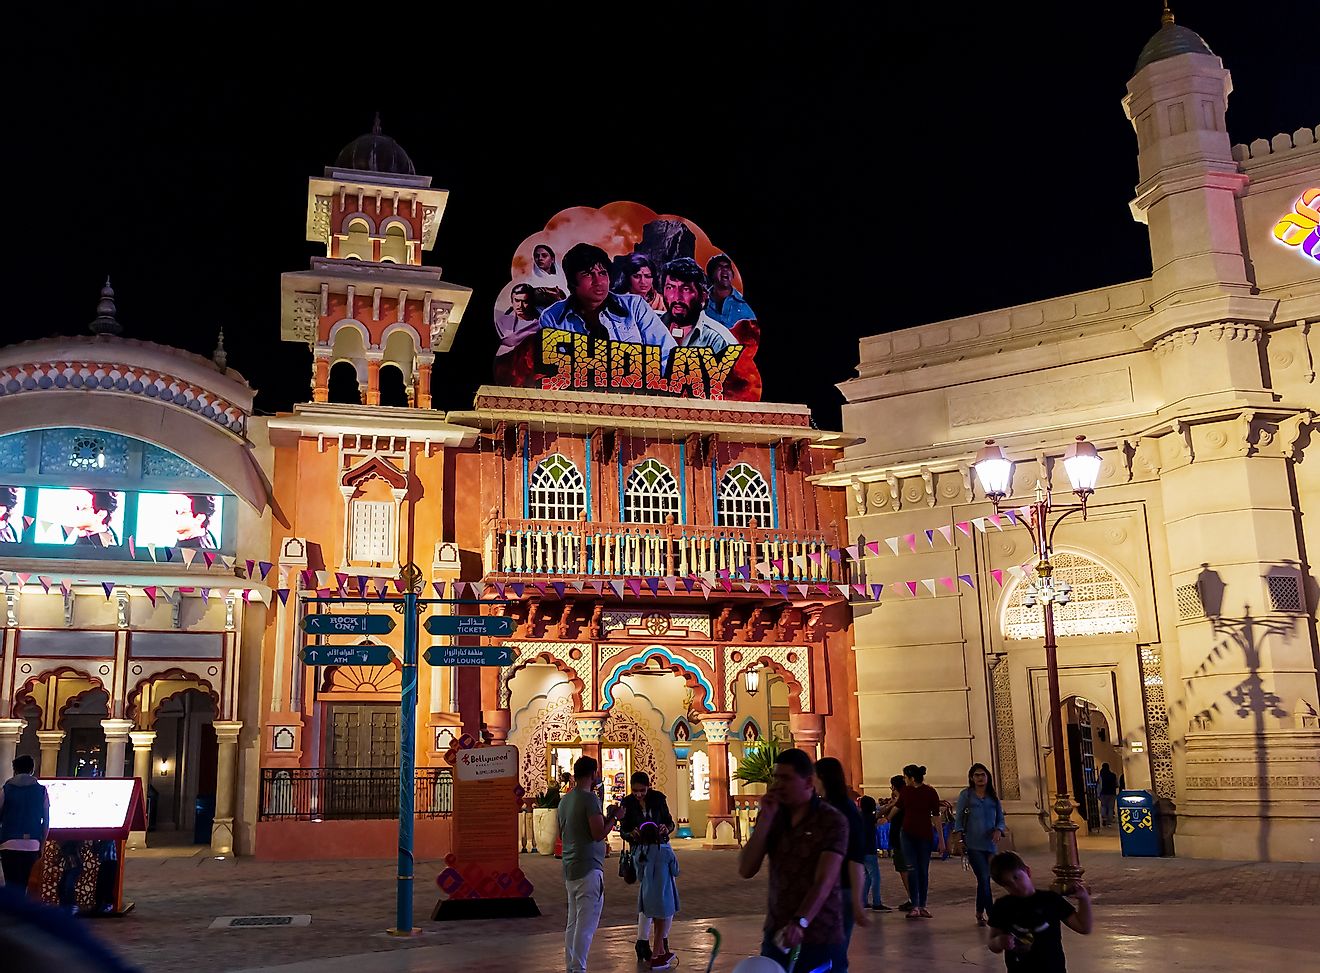 Entrance to Bollywood Park at Dubai Parks and Resorts. Image credit: Juliya_Ka/Shutterstock.com